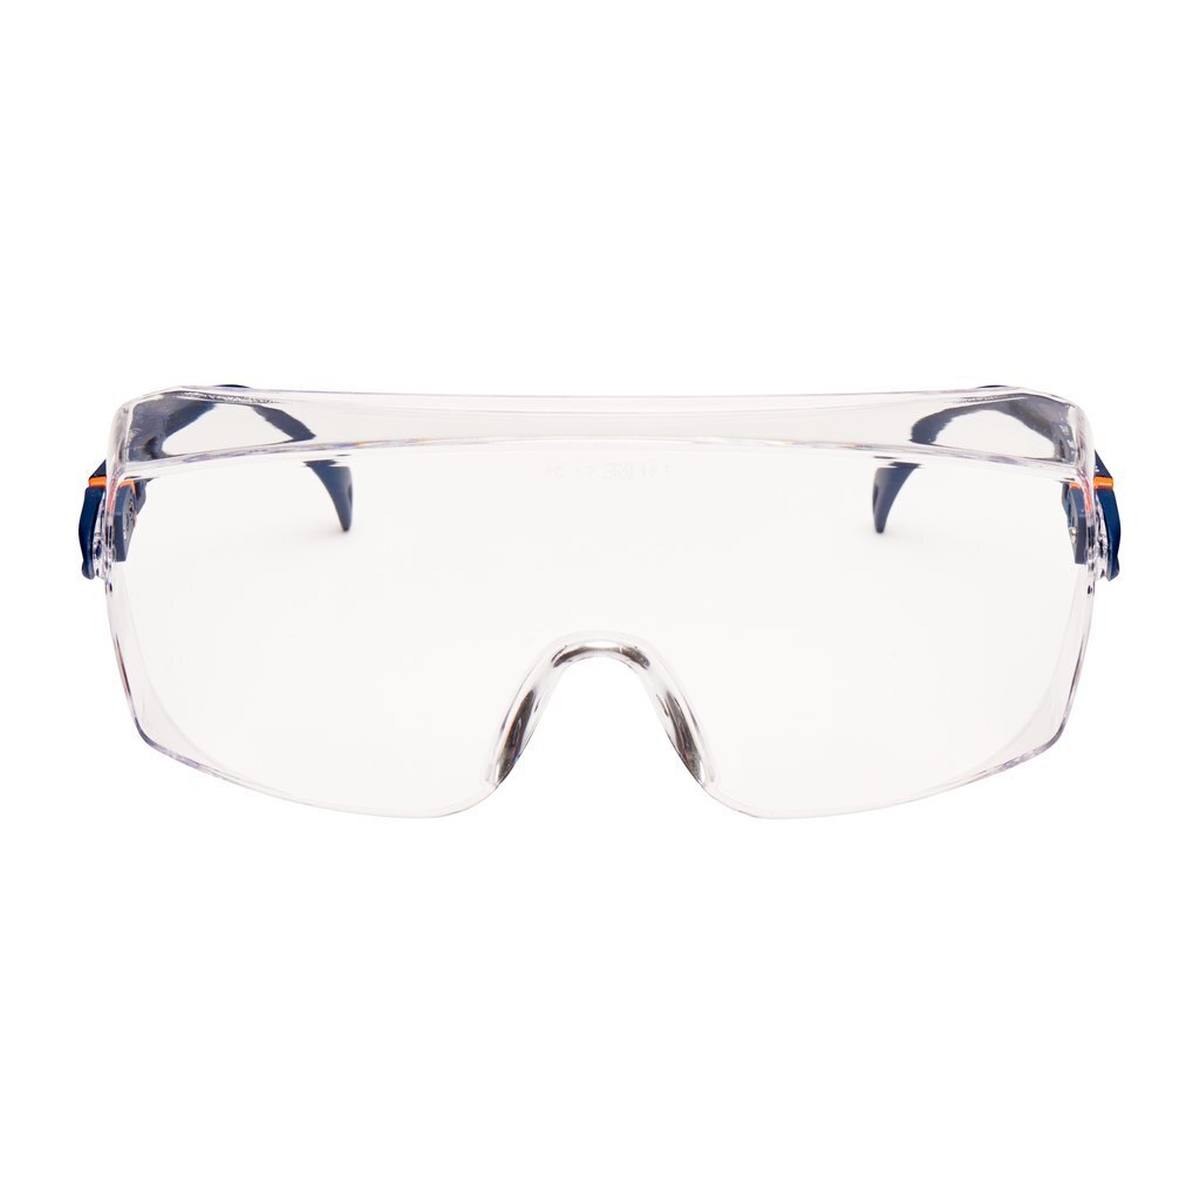 3M 2800 Gafas de protección AS/UV, PC, transparentes, ajustables, ideales como sobregafas para usuarios de gafas